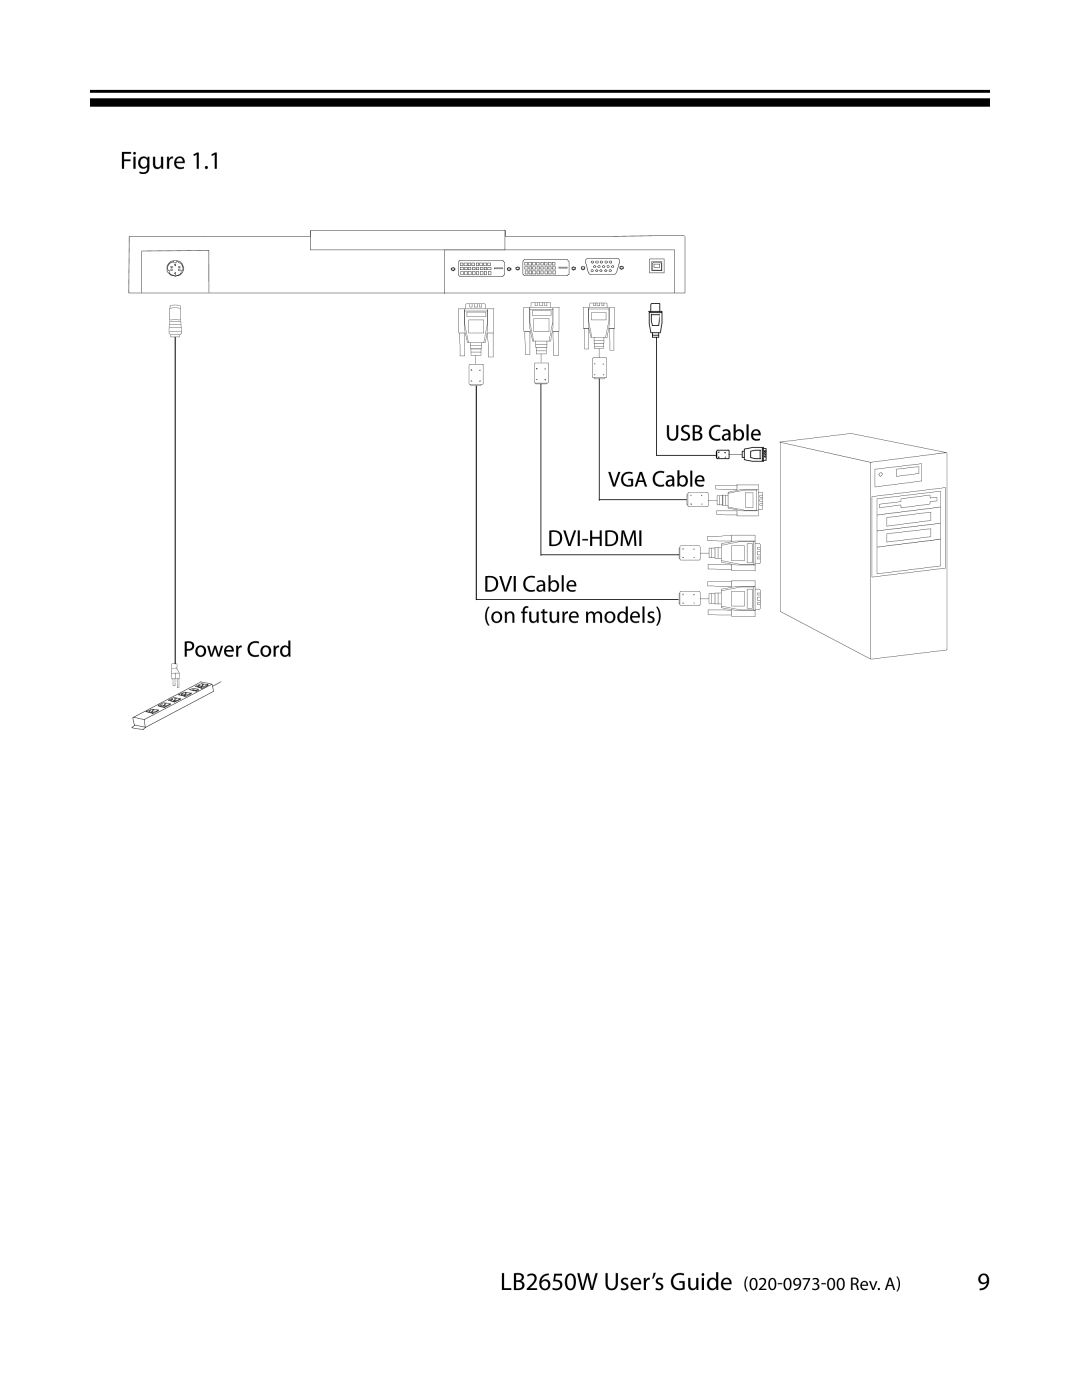 Planar manual LB2650W User’s Guide 020-0973-00 Rev. A, DVI-HDMI DVI Cable on future models 